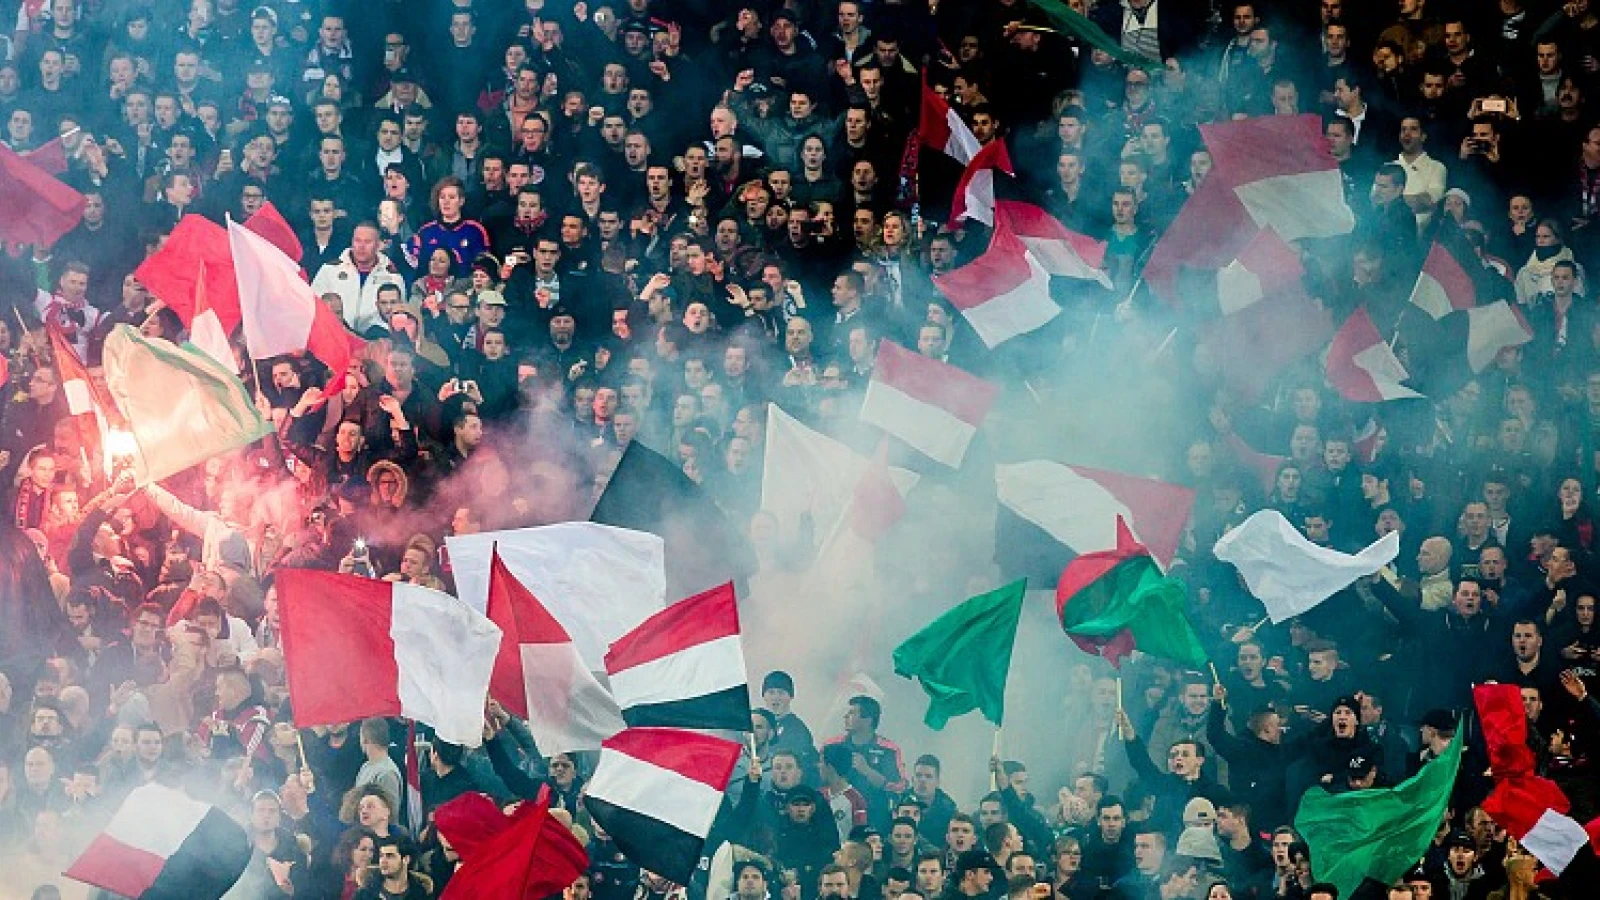 Heel Holland Bakt kandidaat bakt Feyenoord taart